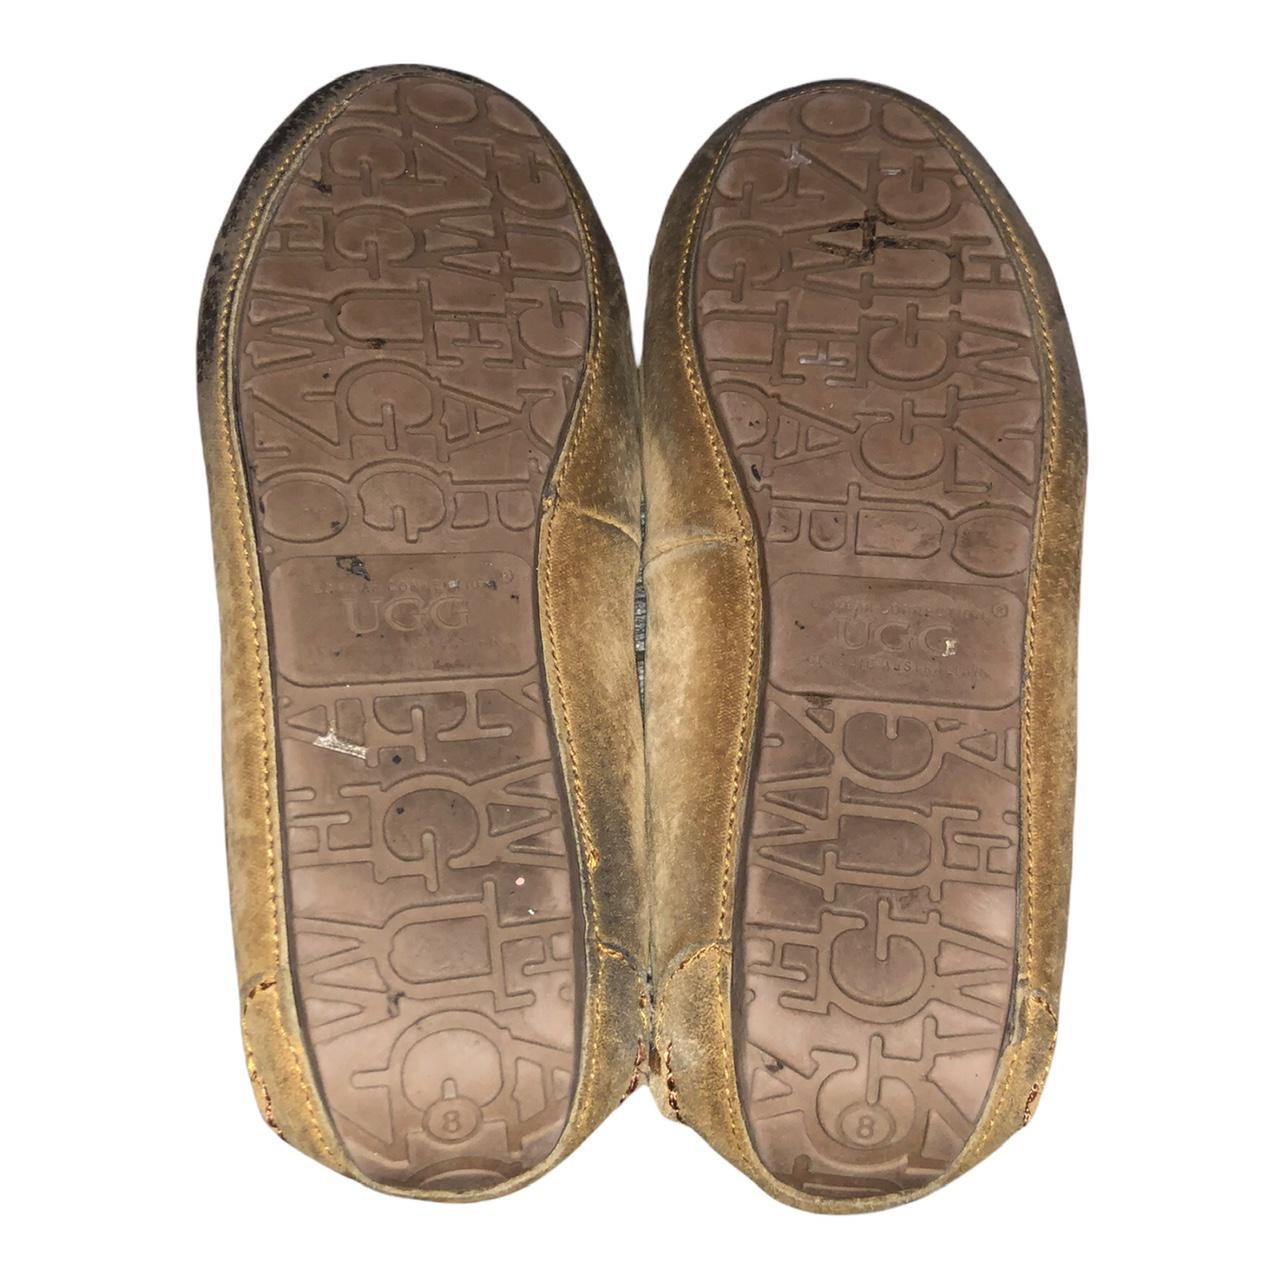 Product Image 4 - UGG Women's Dakota Moccasin Slippers
Size: